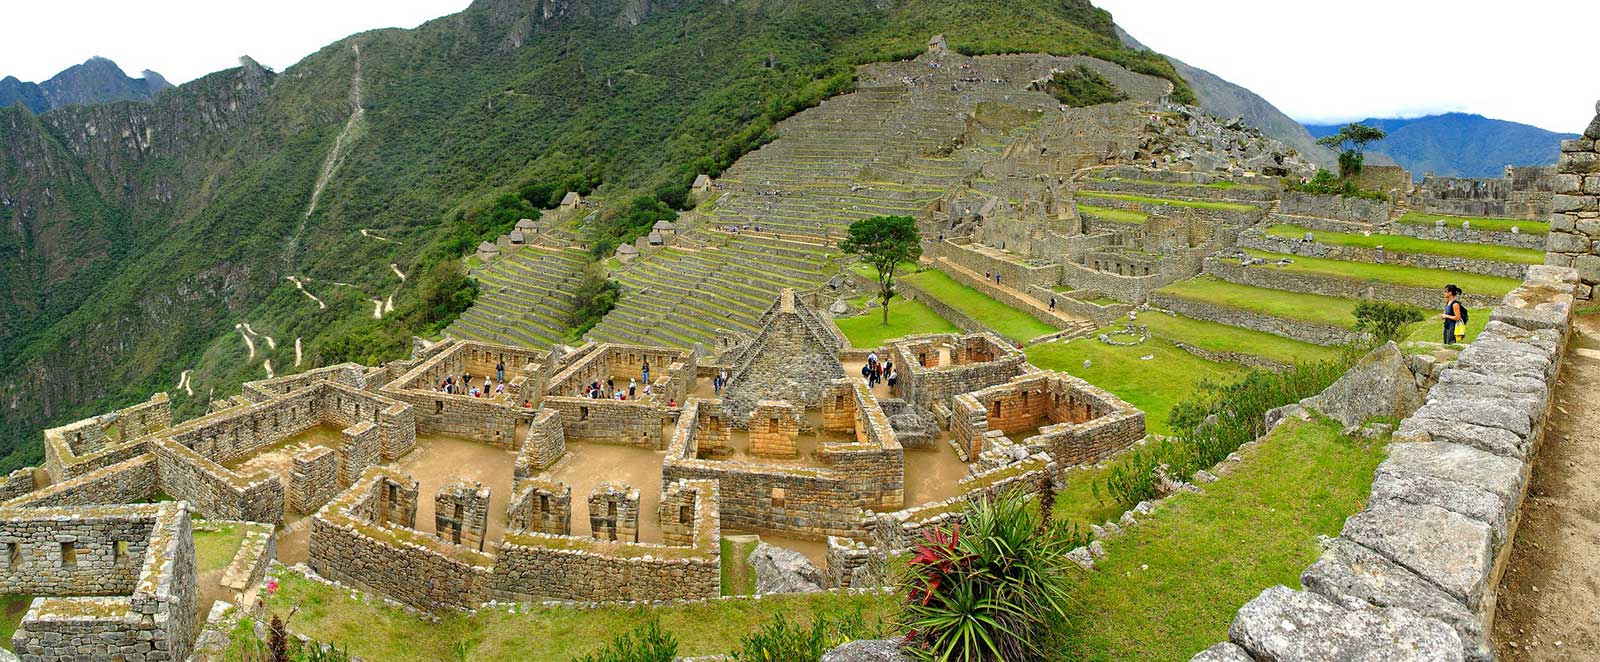 Qué hacer en Perú: Machu Picchu